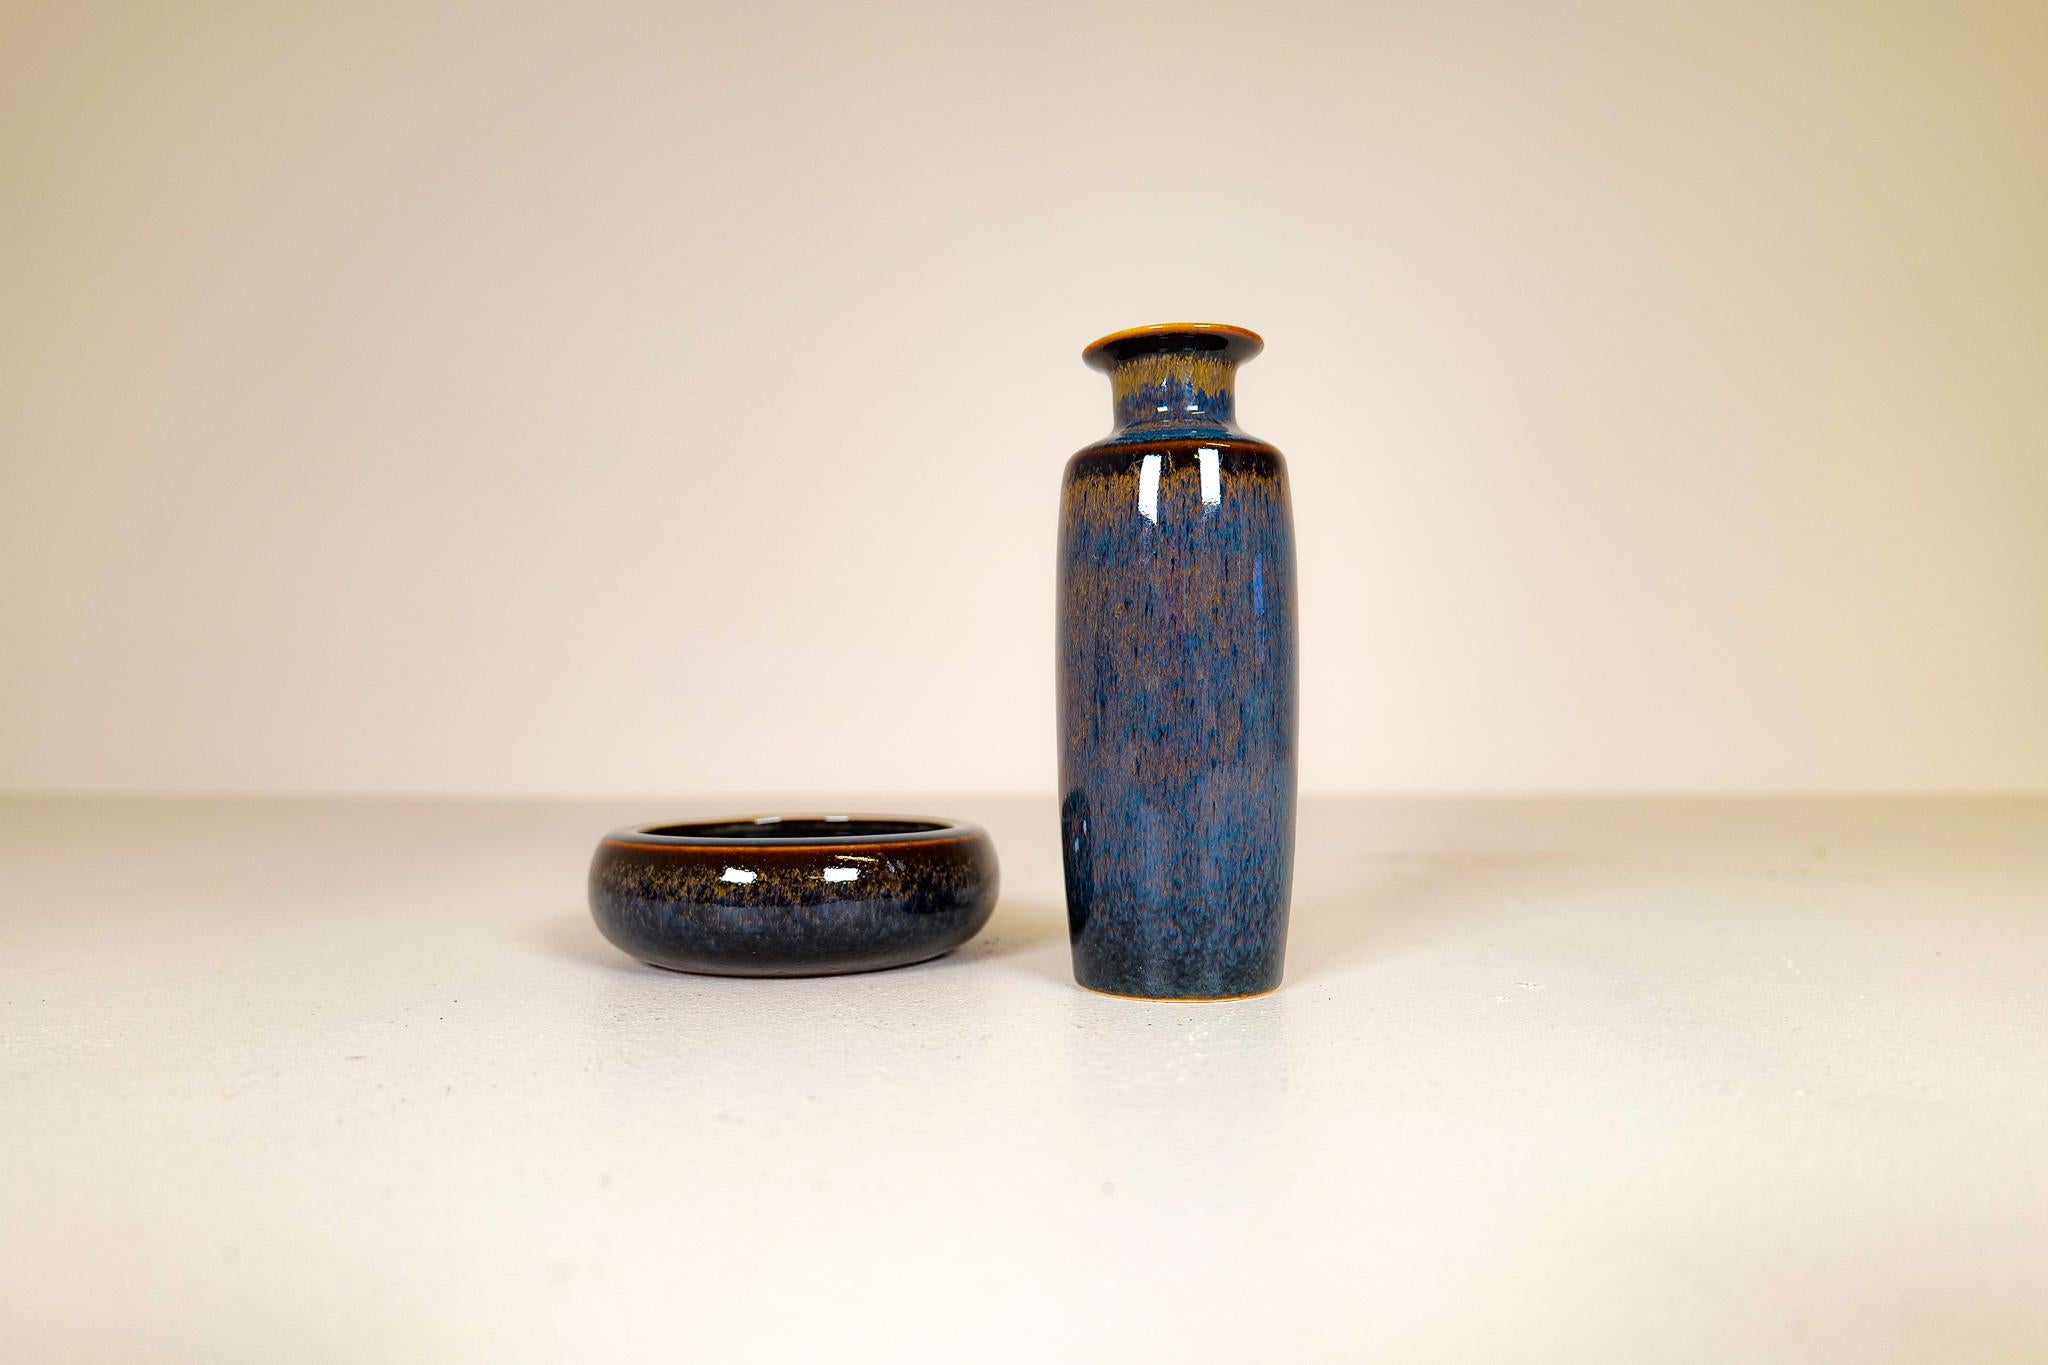 Bol en céramique du milieu du siècle et vase assorti, fabriqués à Rörstrand et réalisés par Carl Harry Stålhane. Fabriqué en Suède dans les années 1950. Magnifiques vases émaillés avec de belles lignes. Cette glaçure typique de la fourrure de